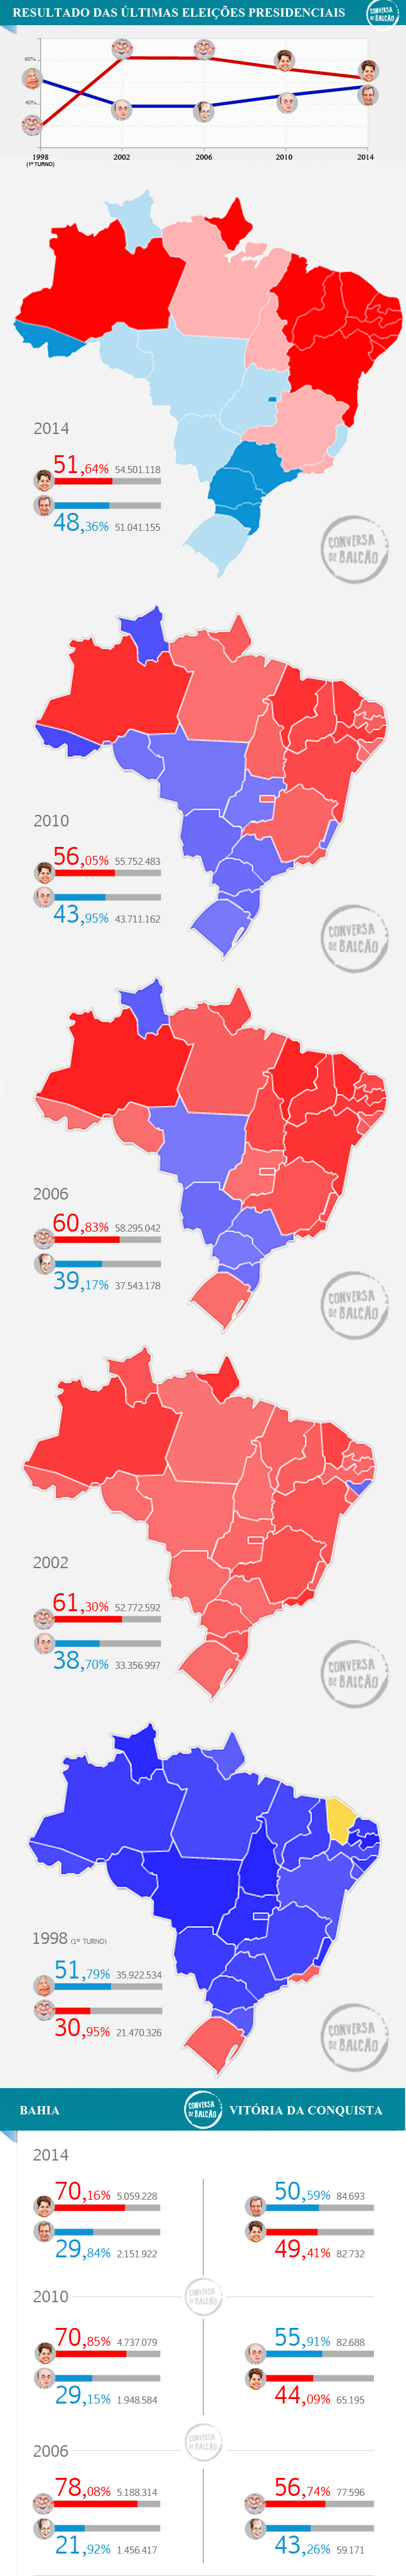 infografico resultados eleições brasil